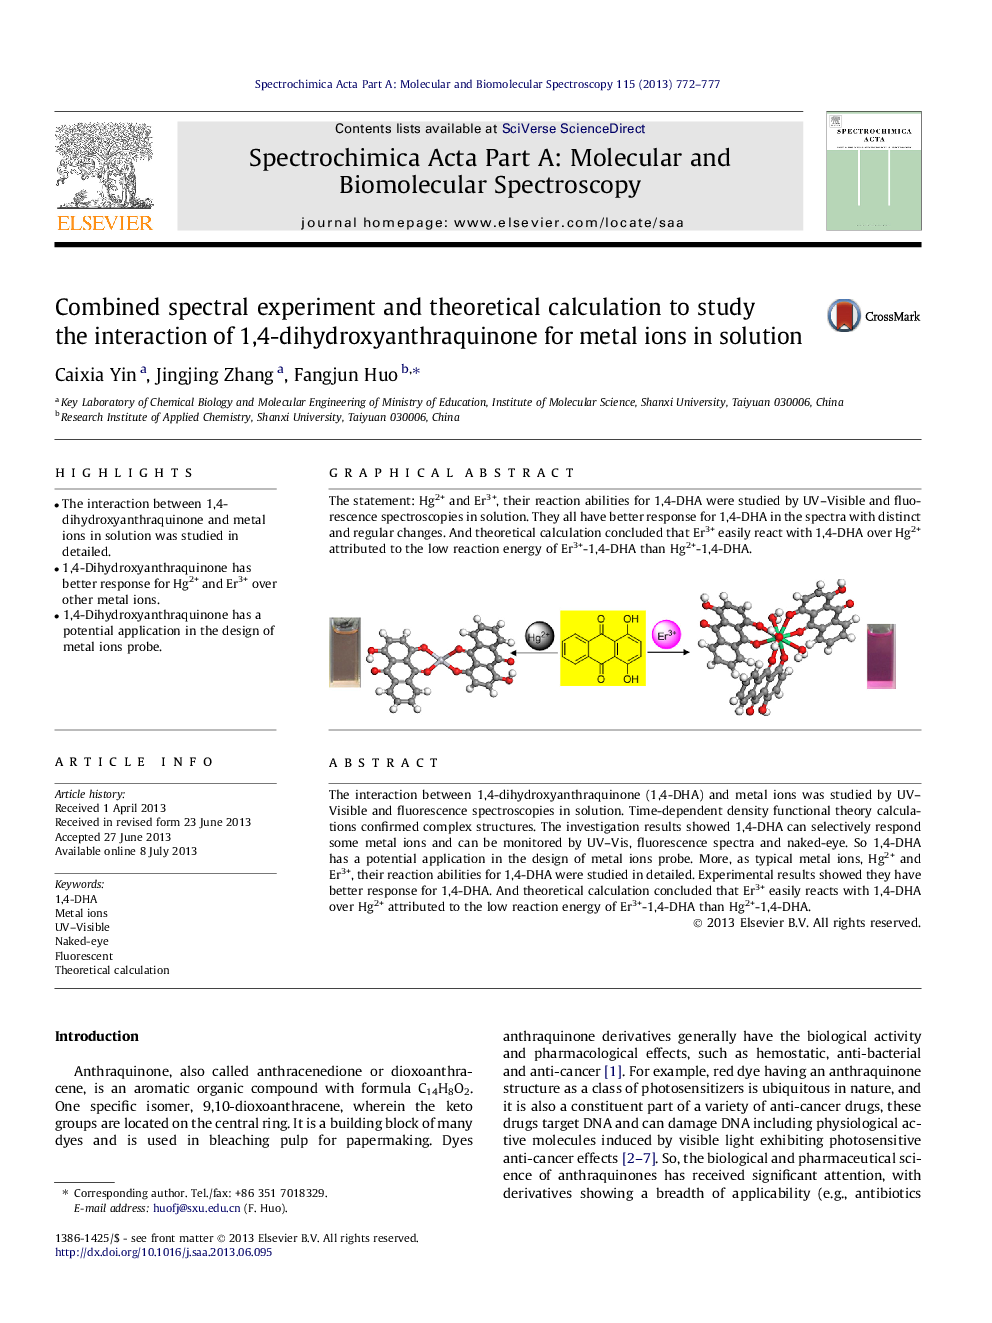 آزمایش طیفی ترکیبی و محاسبه نظری برای مطالعه تعامل 1،4-دی هیدروکسی سنتوراکینون برای یون های فلزی در محلول 